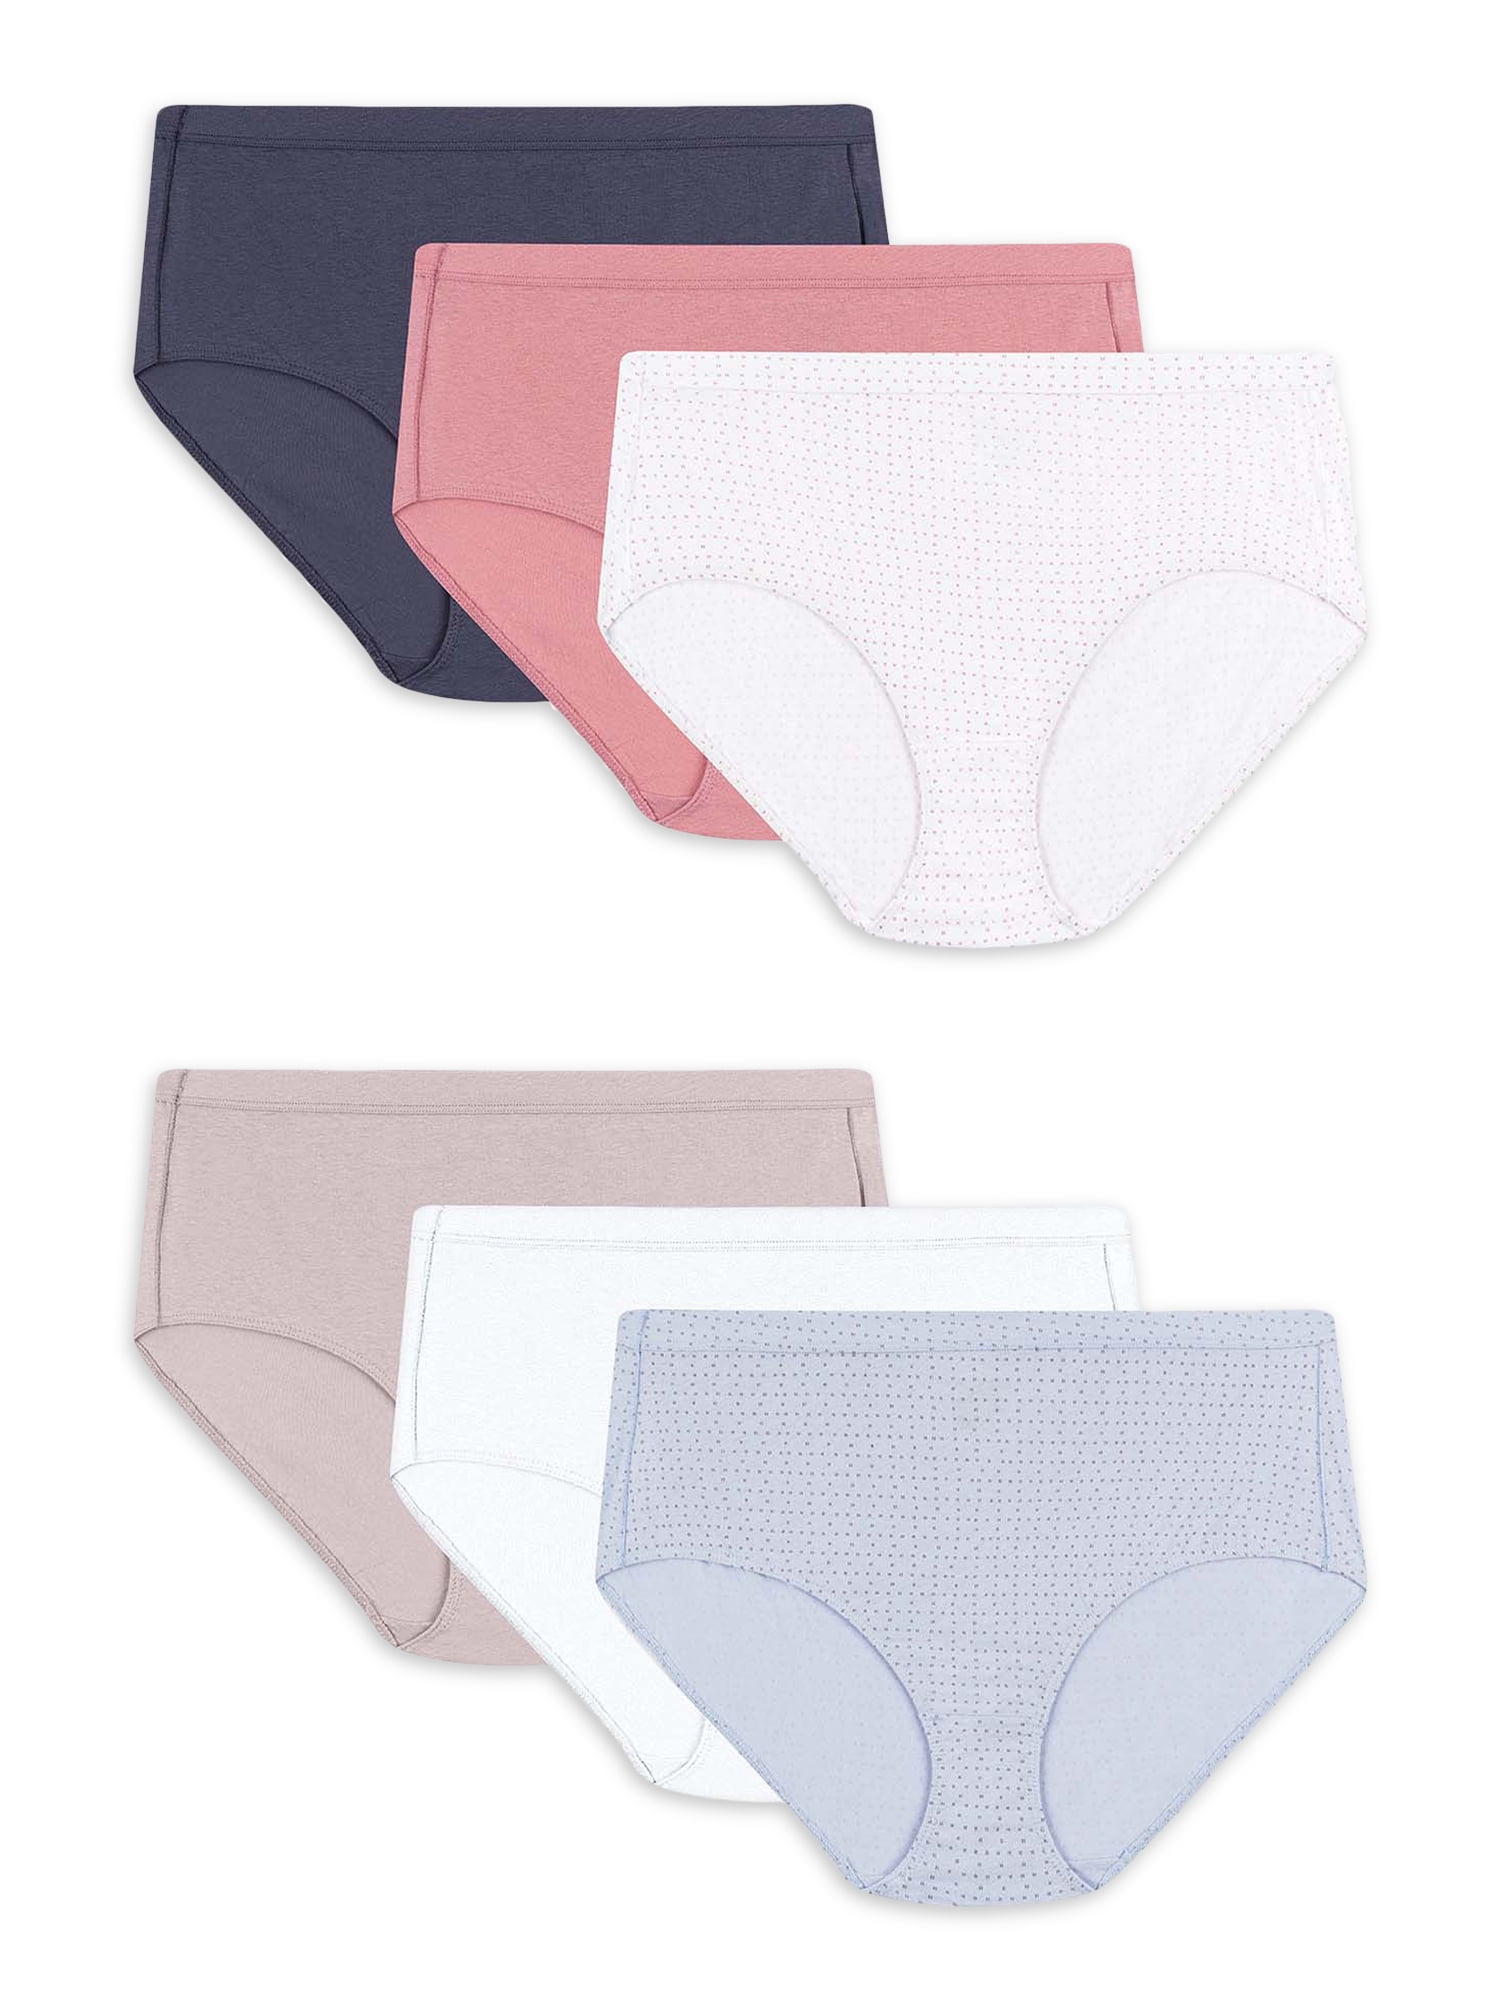 Just My Size Women's Pure Comfort Cotton Brief Underwear, 6-Pack 